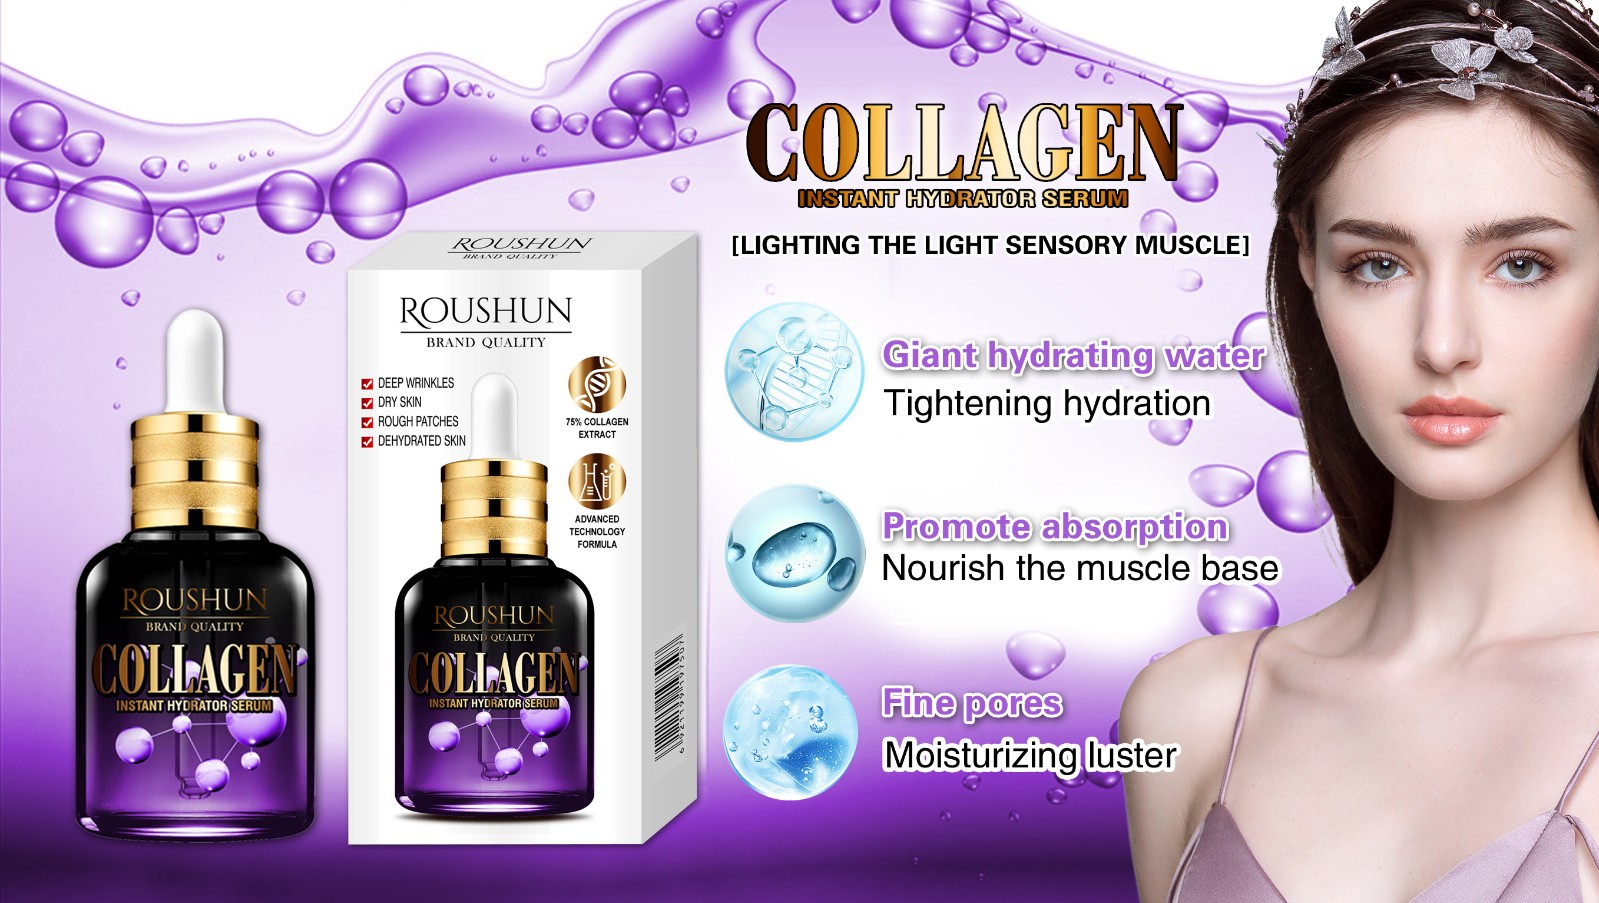 Collagen Firming Moisturizing Serum